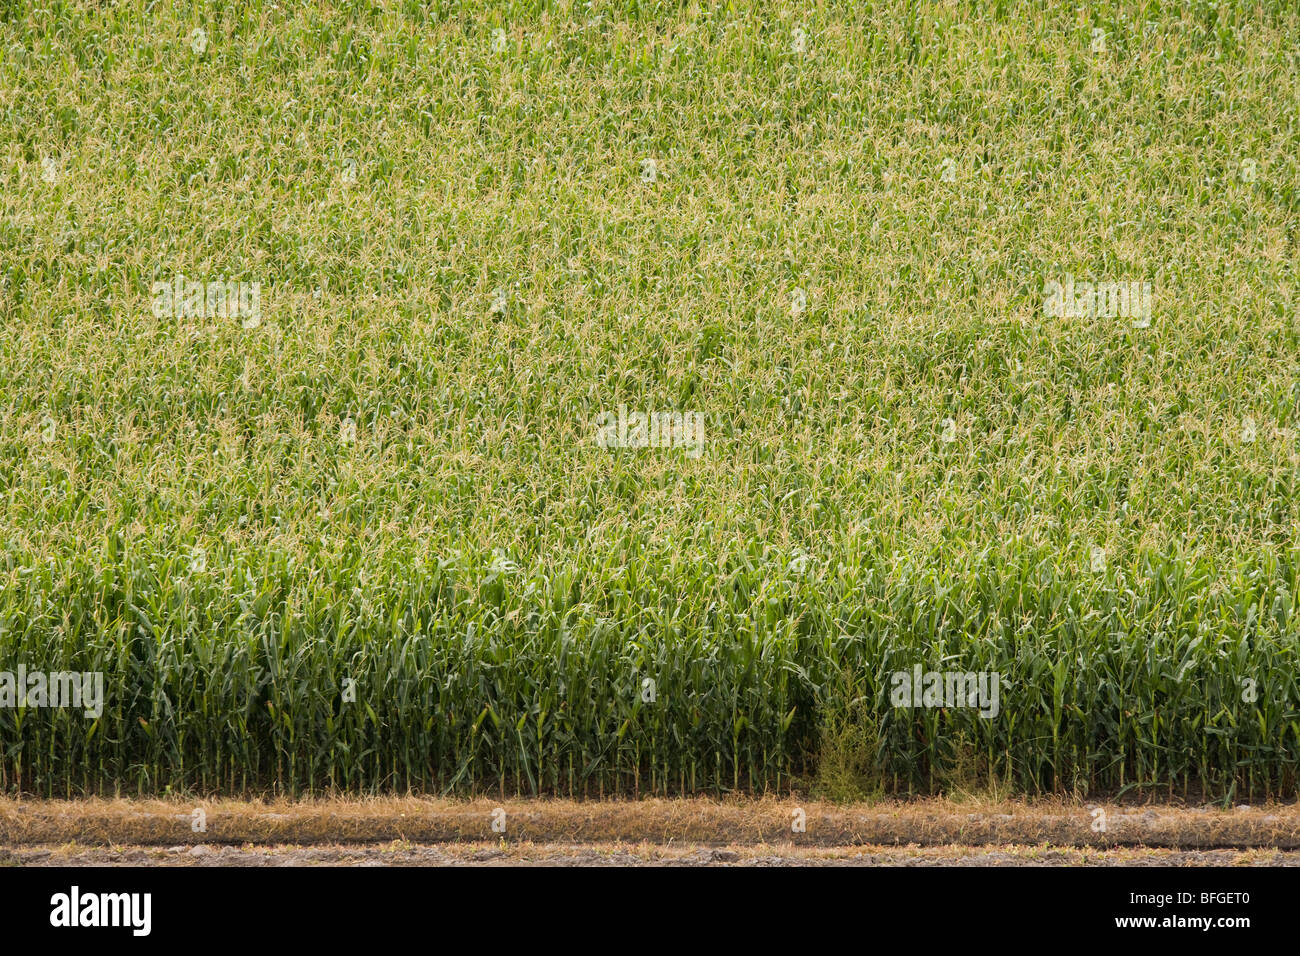 Vista aérea de un campo de maíz de maíz americano en verano. North Platte, Nebraska NE USA. Foto de stock